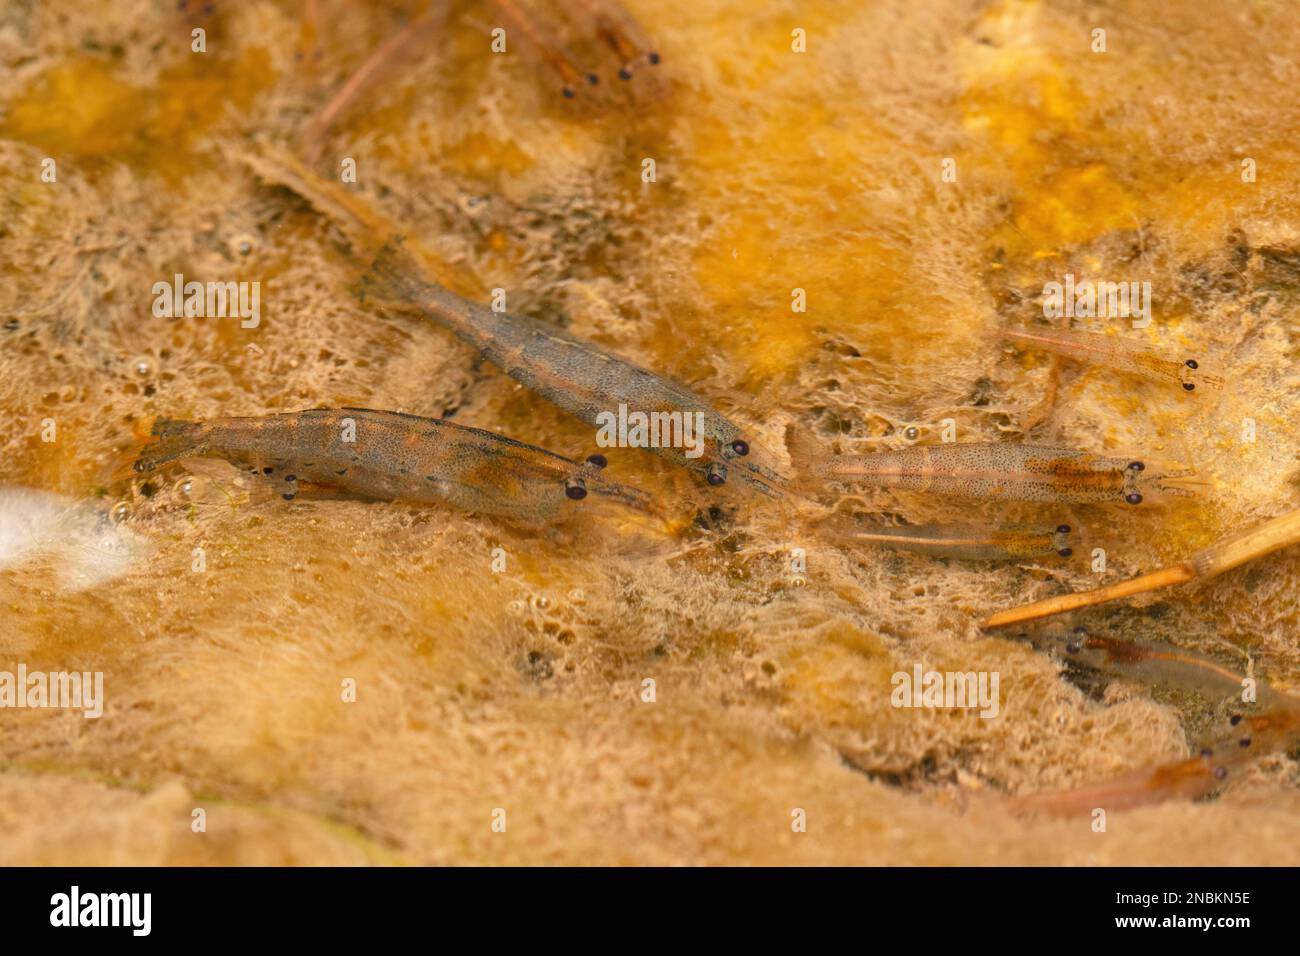 Freshwater shrimp, Satara, Maharashtra, India Stock Photo